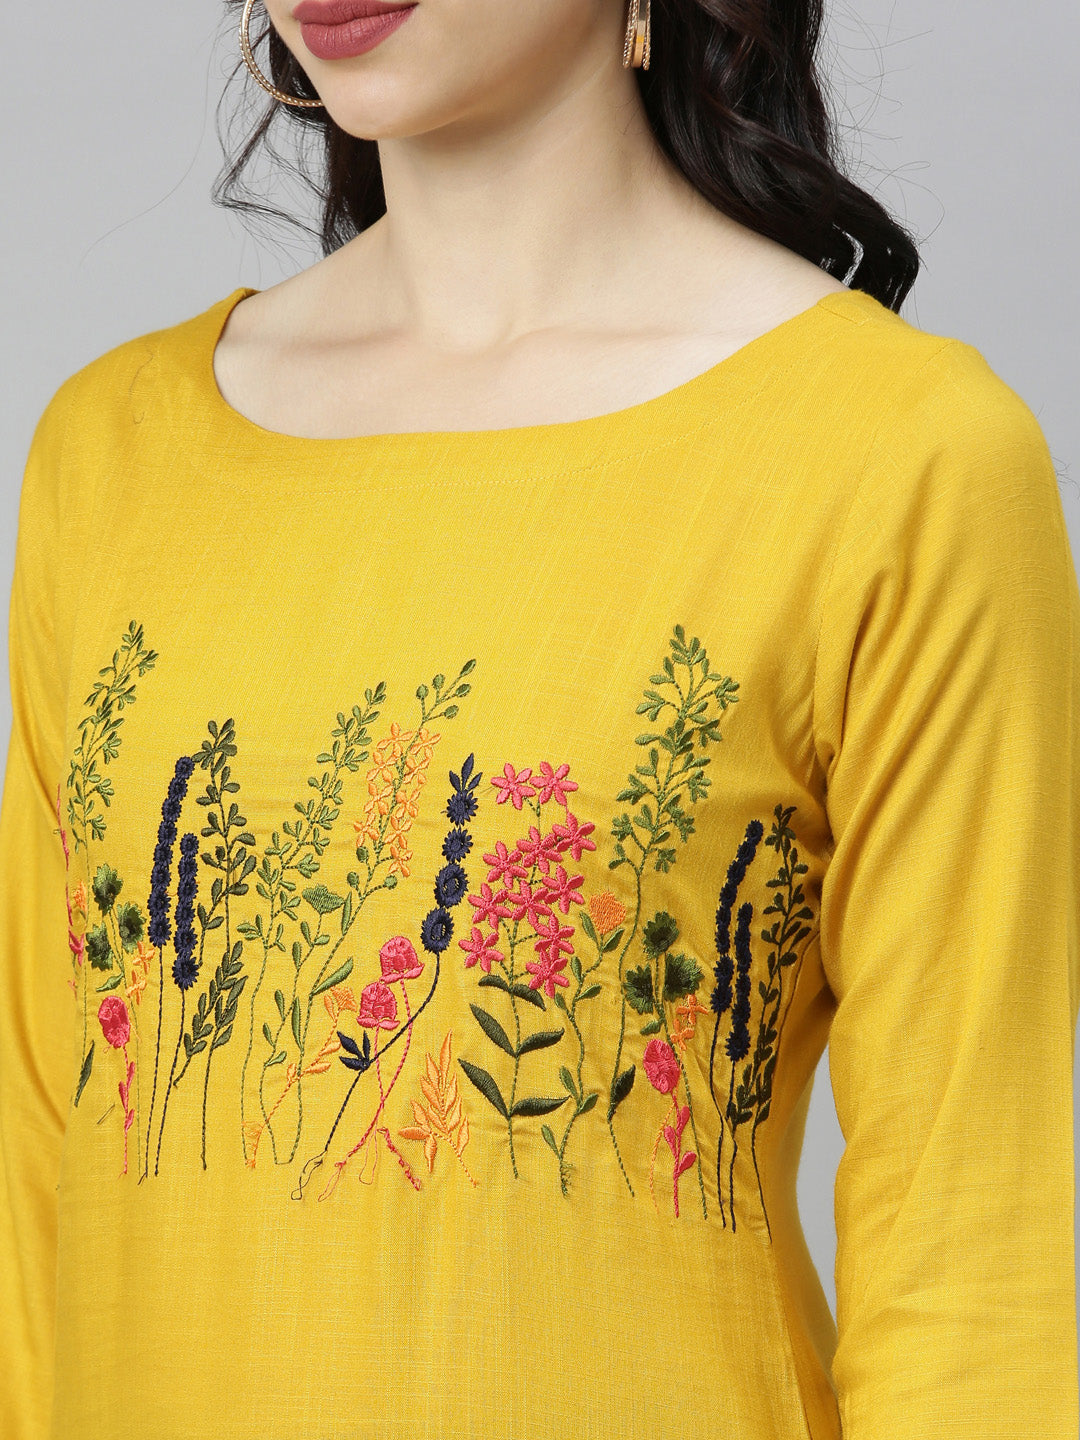 Neeru's Yellow Embroidered Straight Kurta